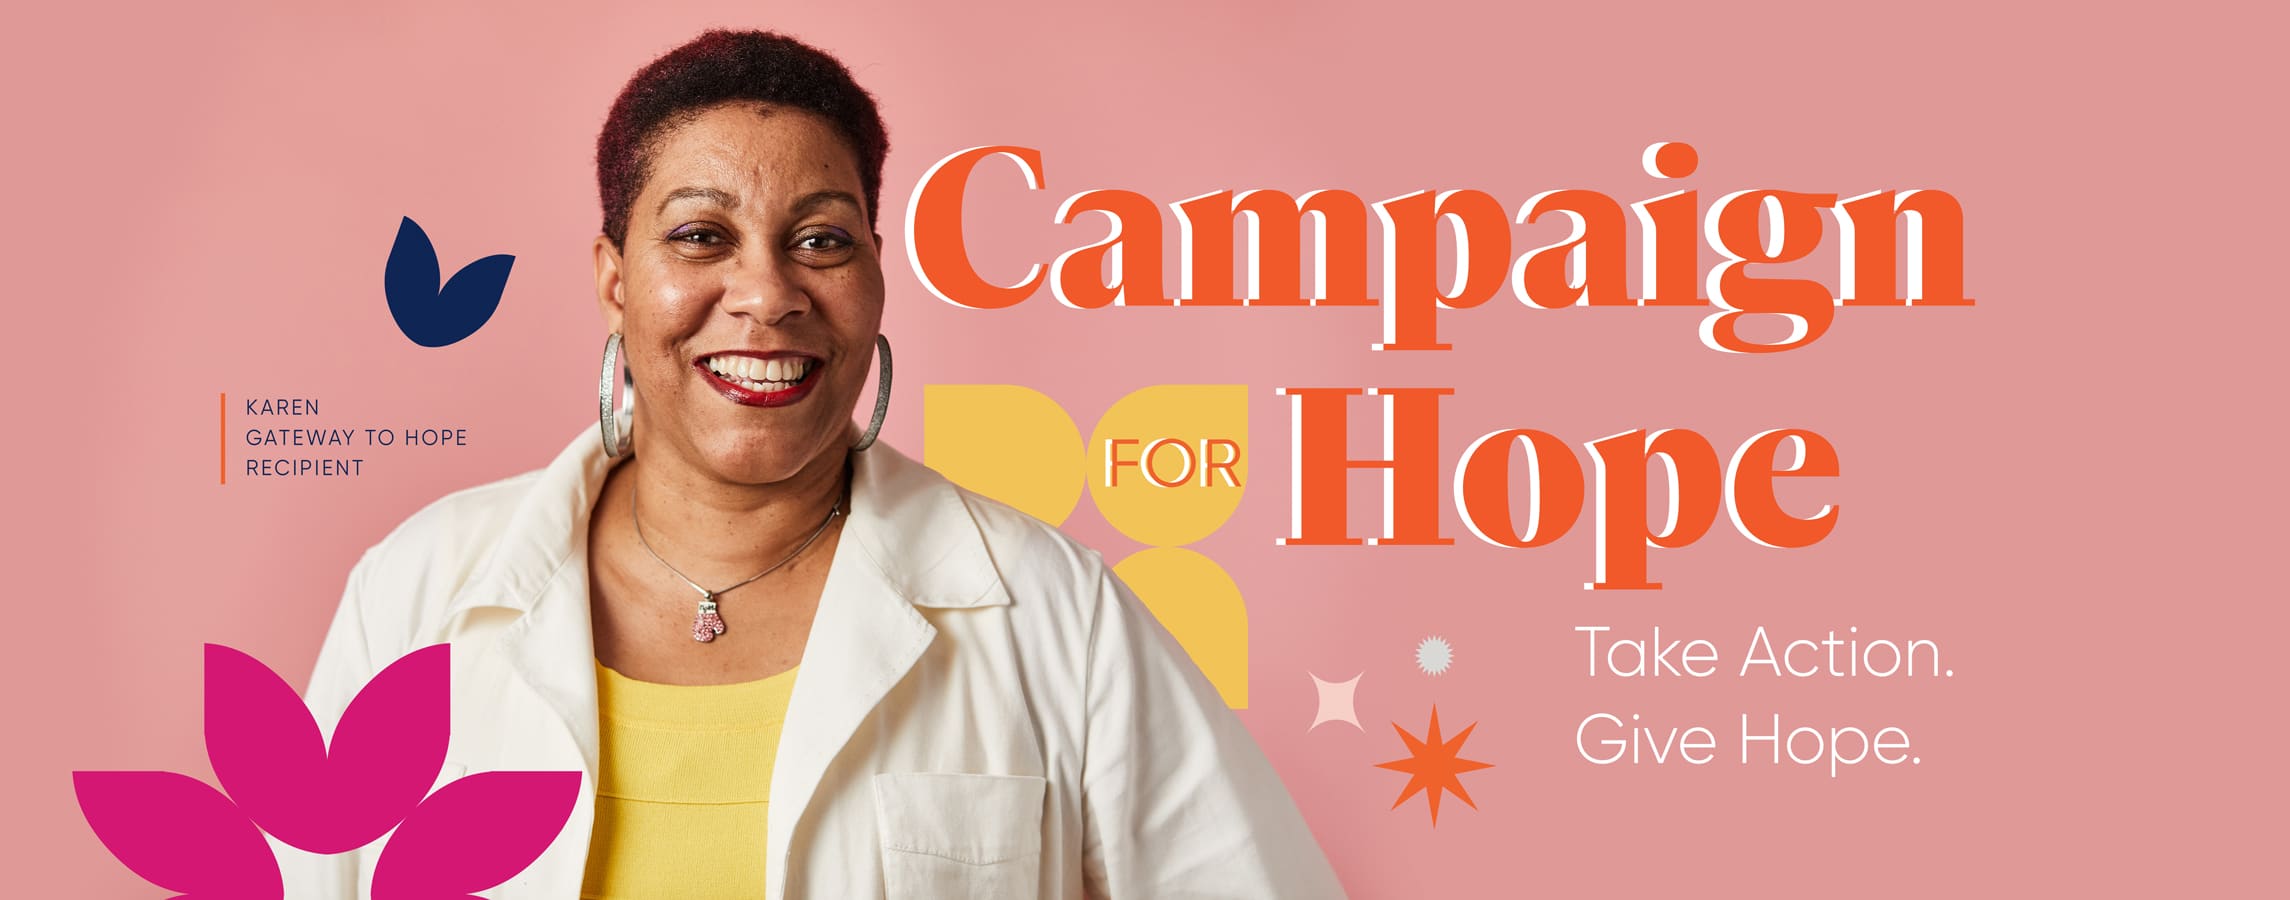 Campaign for Hope - Karen